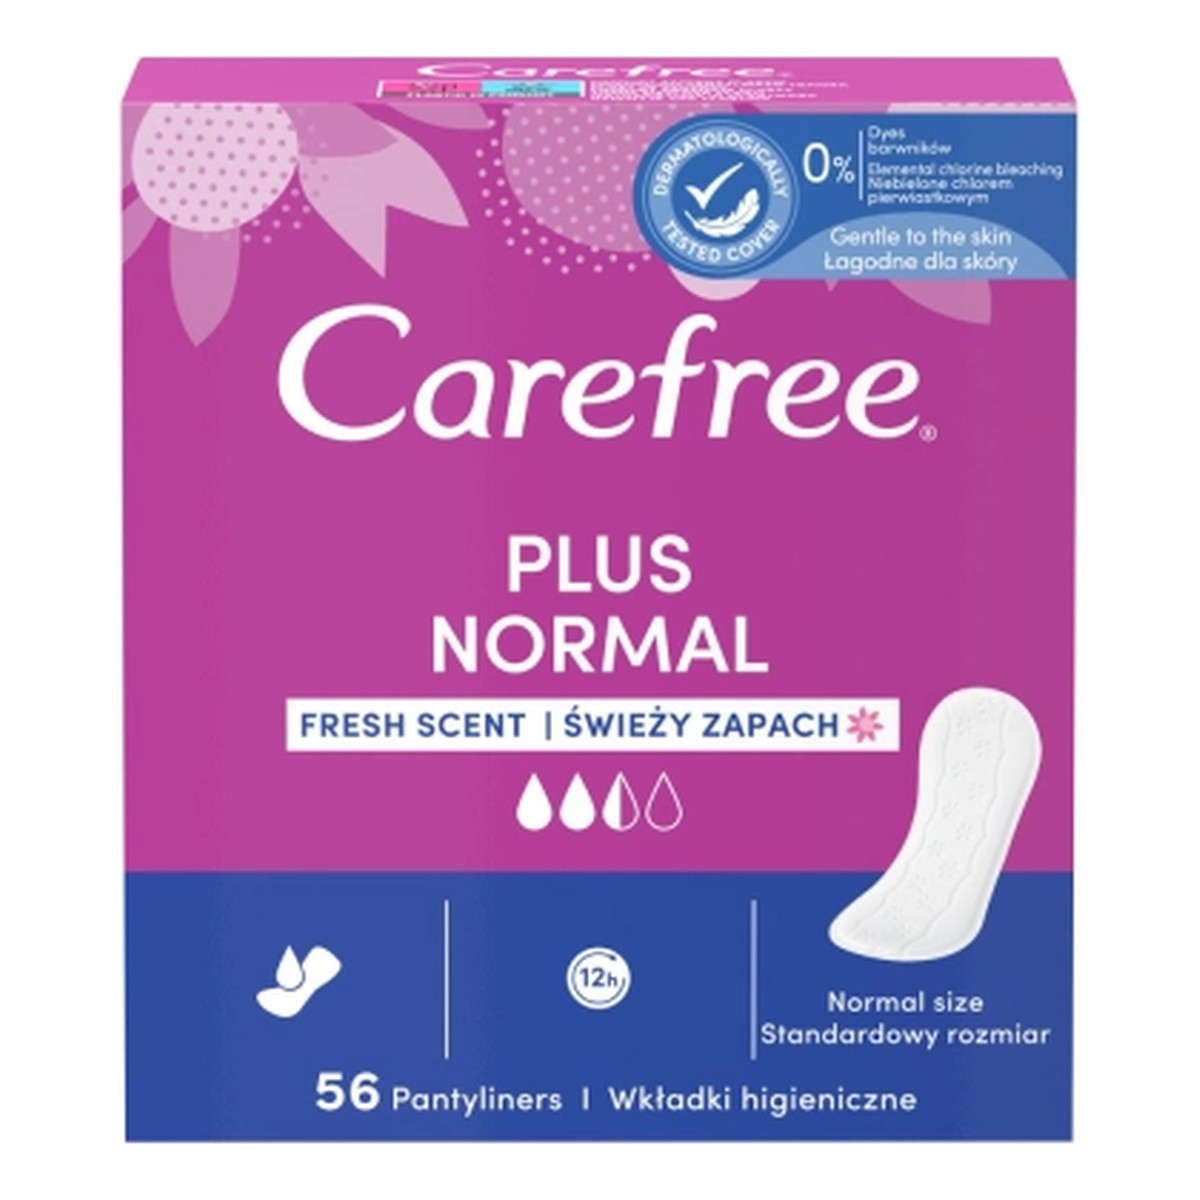 Carefree Plus Original Wkładki higieniczne świeży zapach 56 sztuk